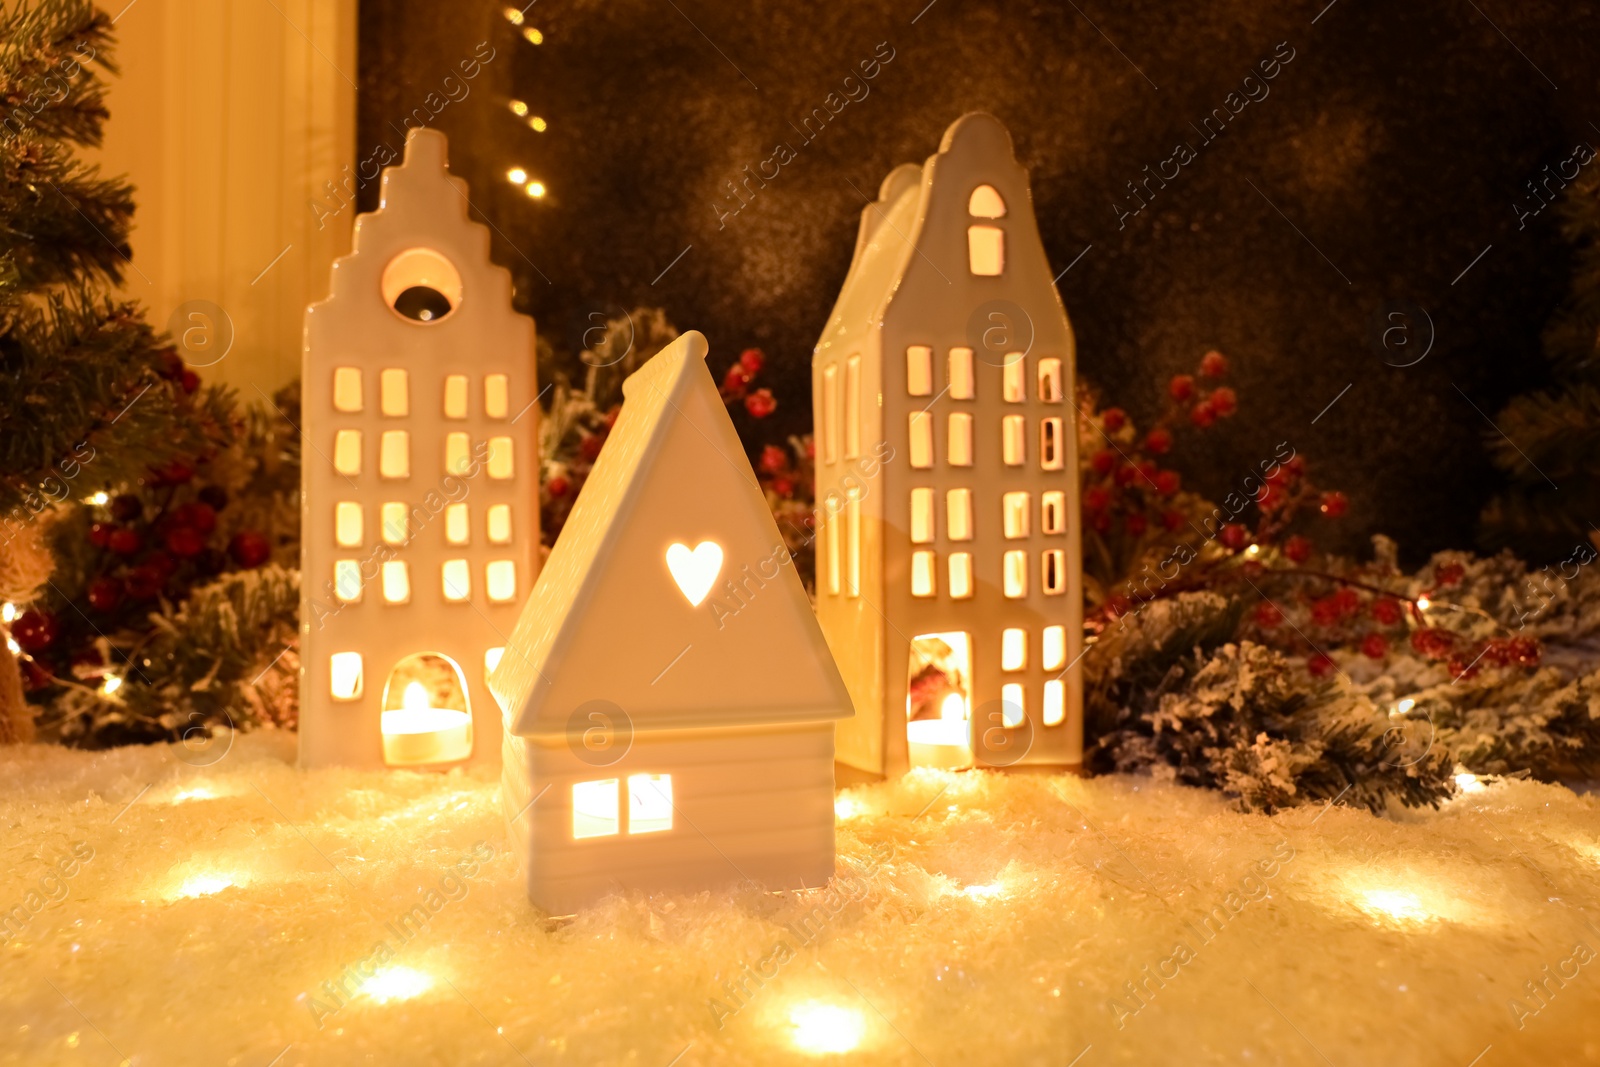 Photo of House shaped lanterns and Christmas decor on windowsill indoors